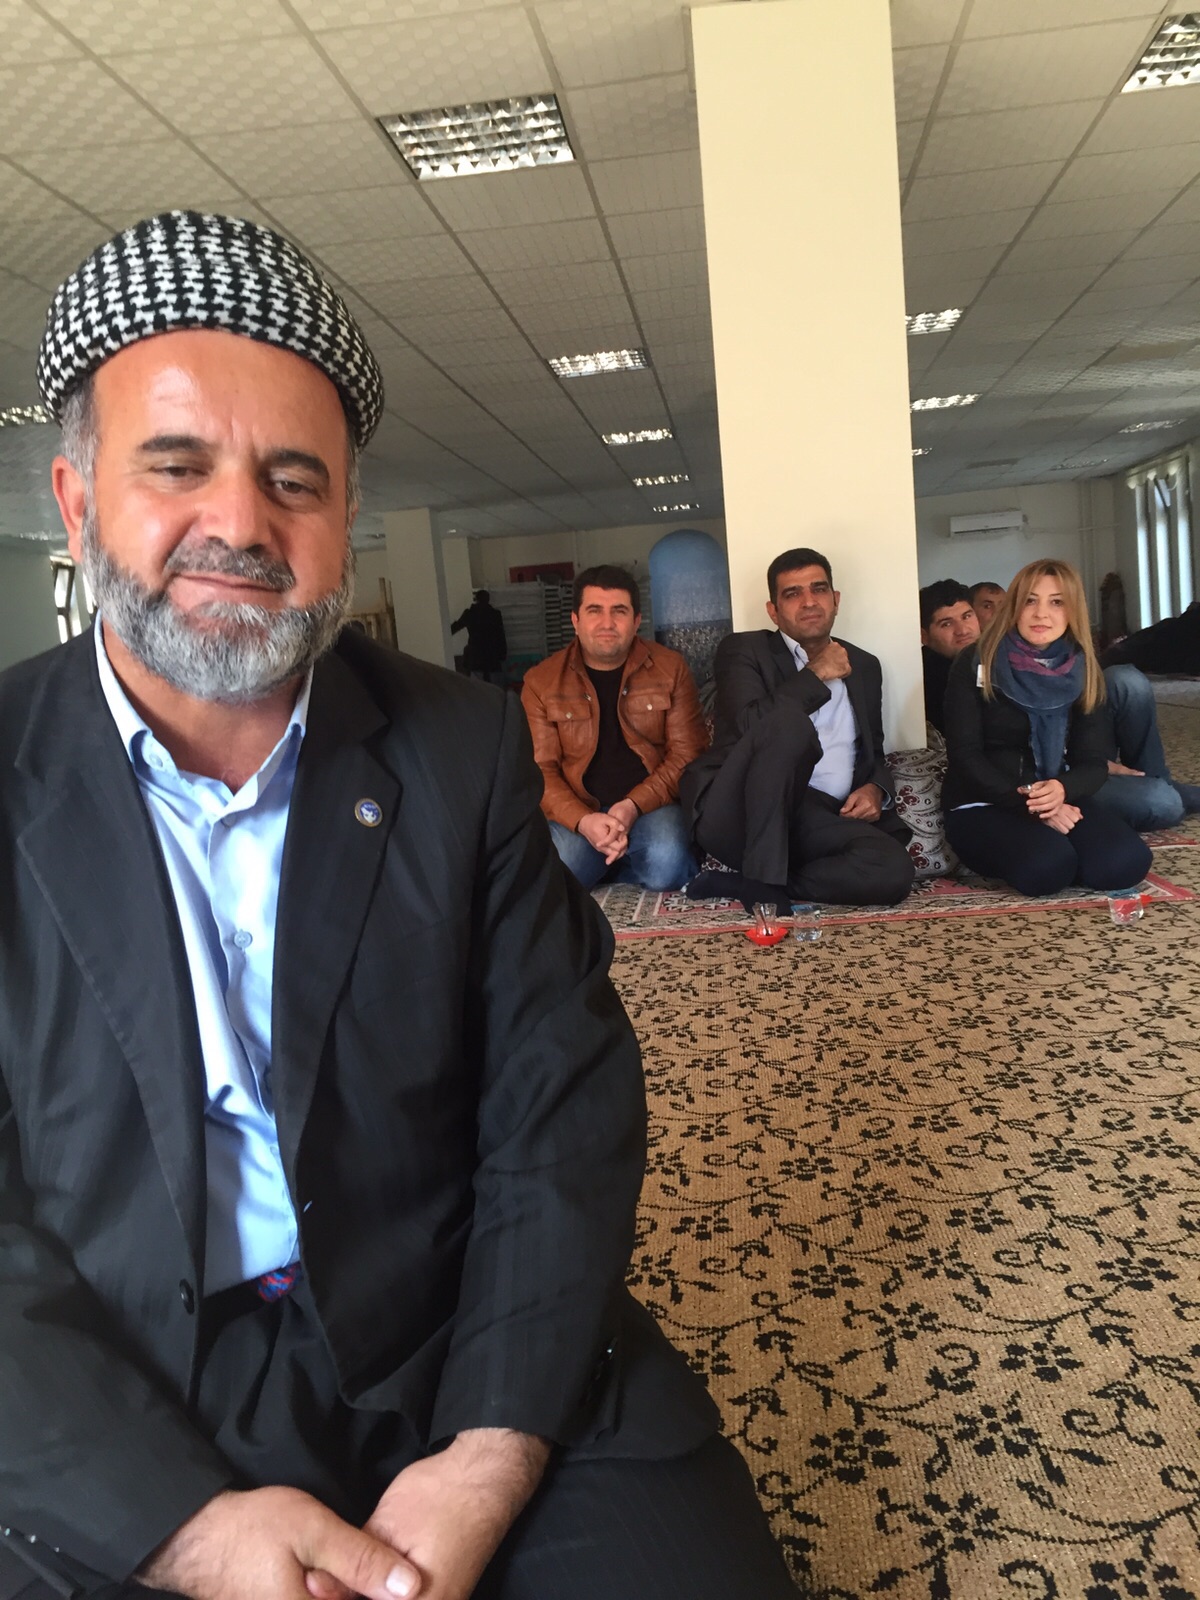 Kasım Yiğit, imam. ‘Kürtçe vaaz vermek’ten 5 yıl hapis yatmış 